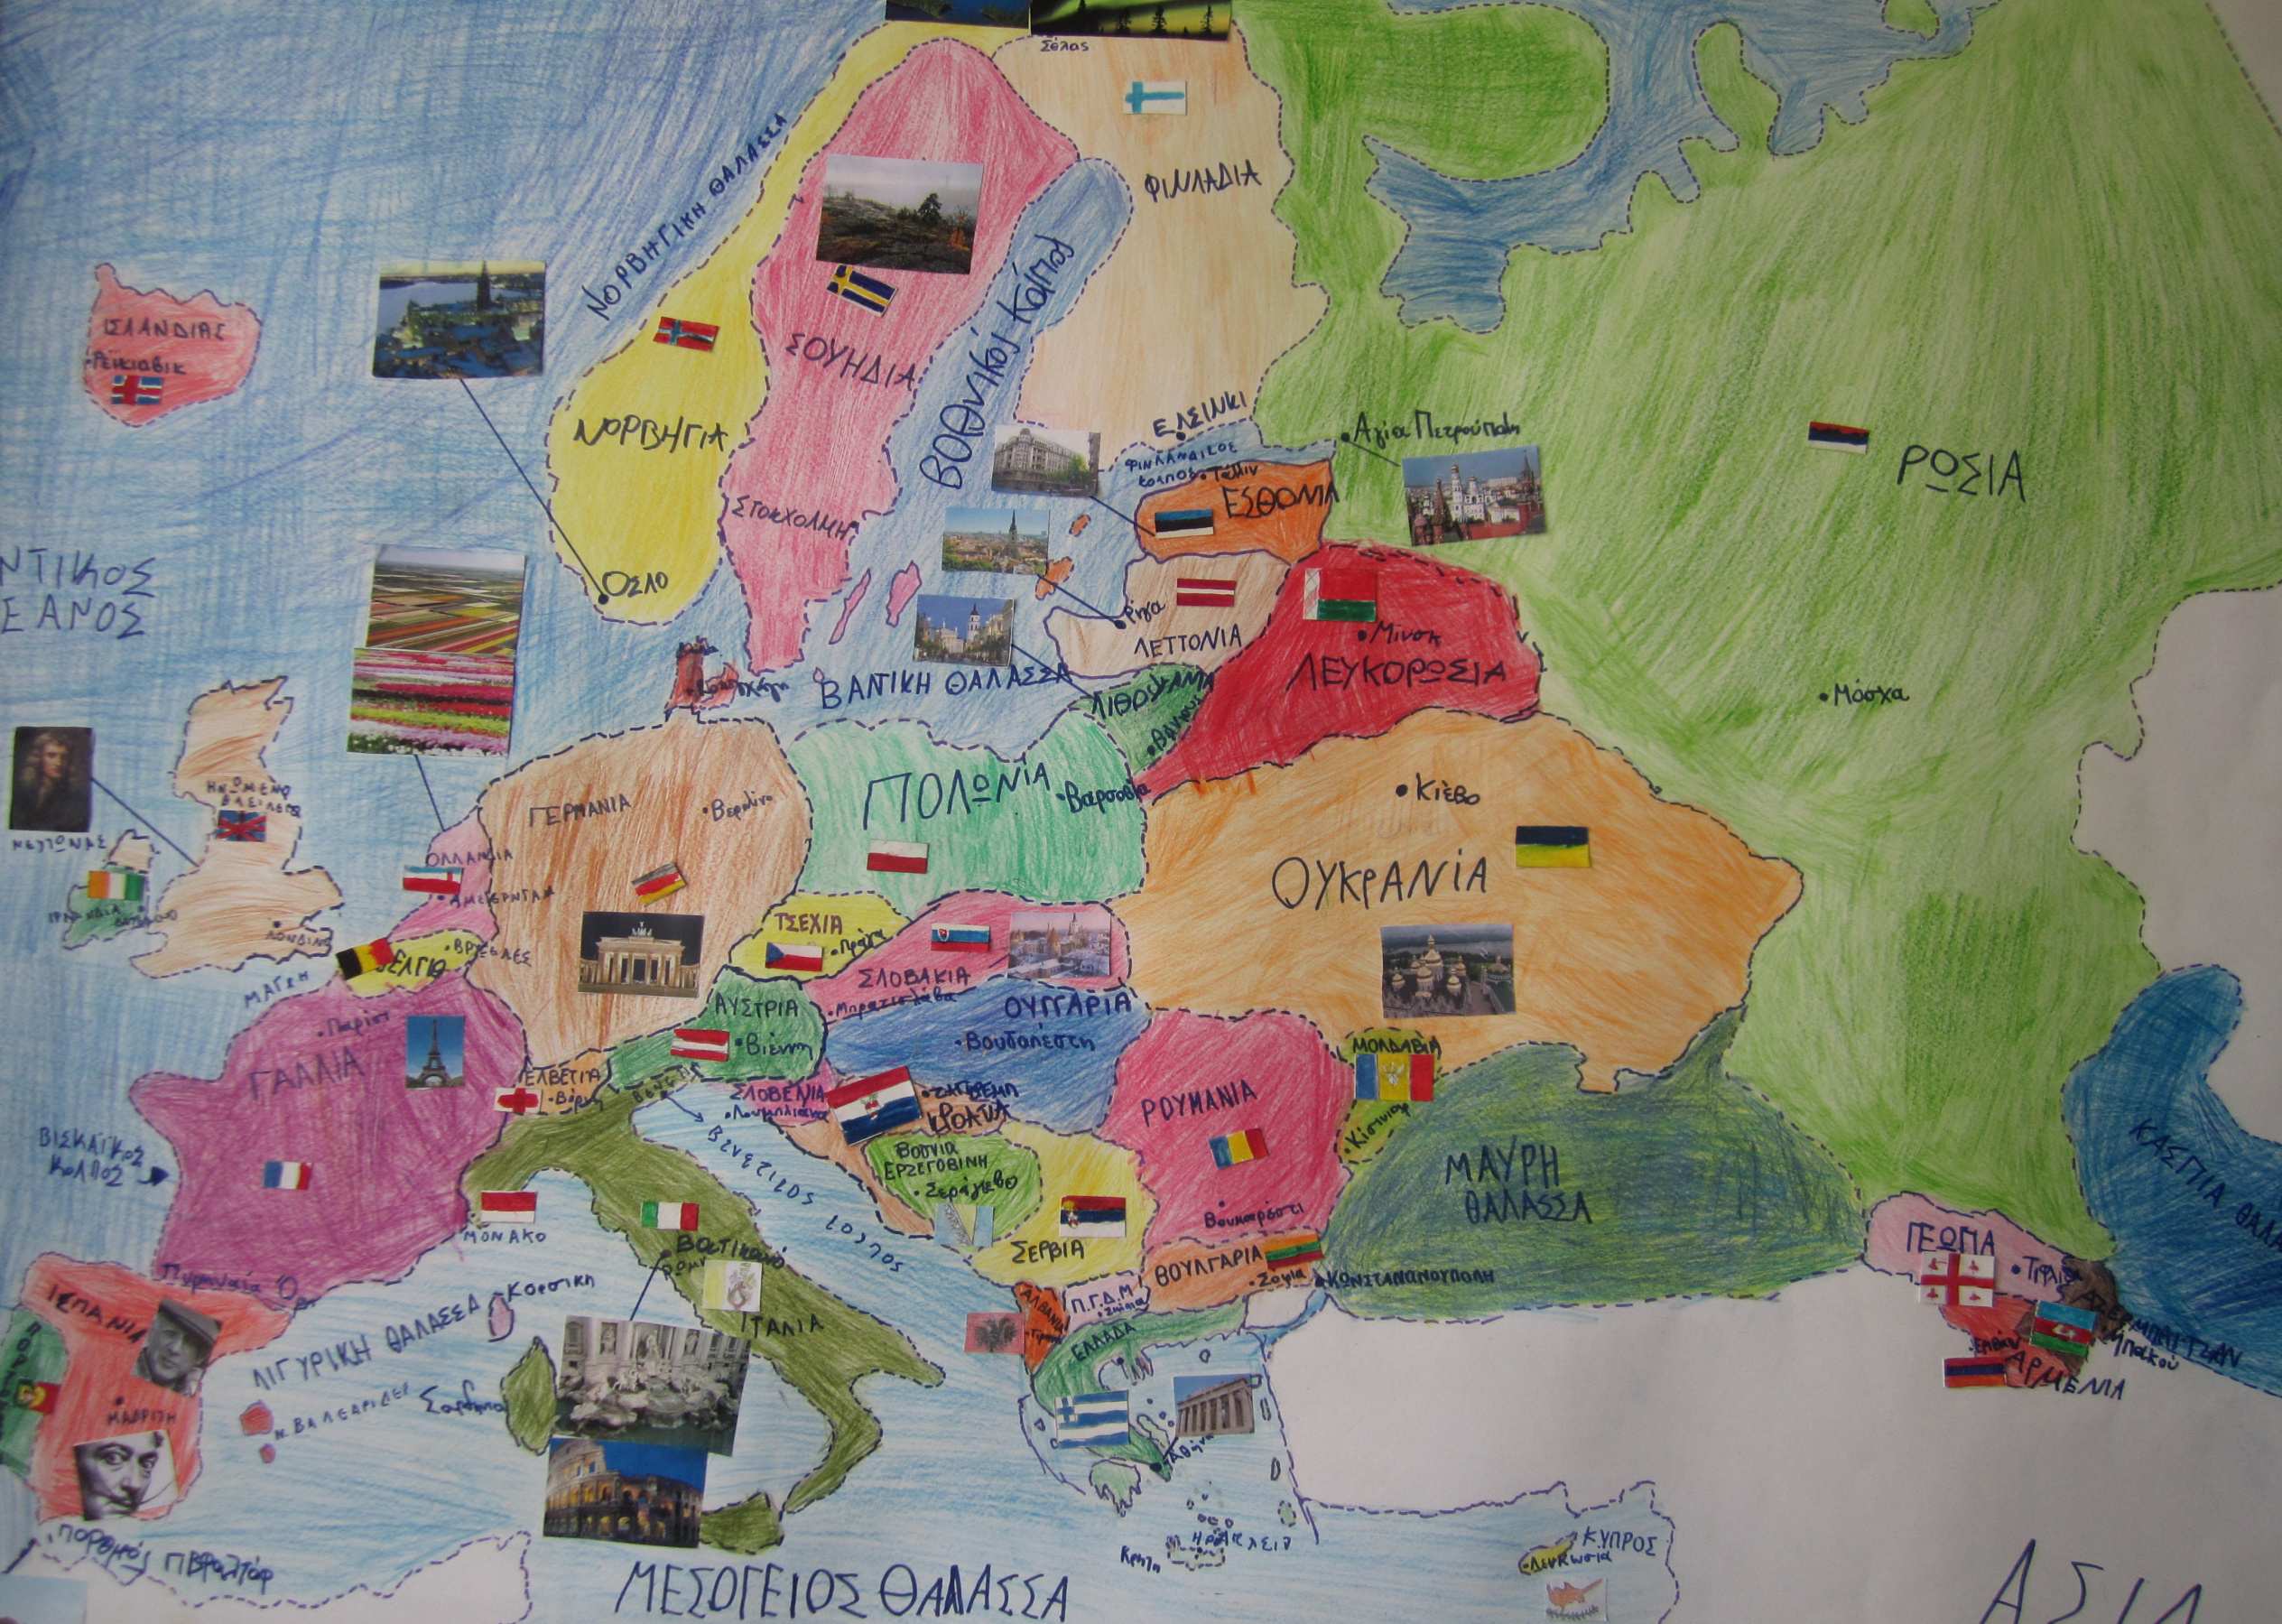 Στη συνέχεια πάνω στο χάρτη προστέθηκαν από τα παιδιά τα ονόµατα των θαλασσών της Ευρώπης, ορισµένων κόλπων, κάποιων βουνών και µεγάλων νησιών.